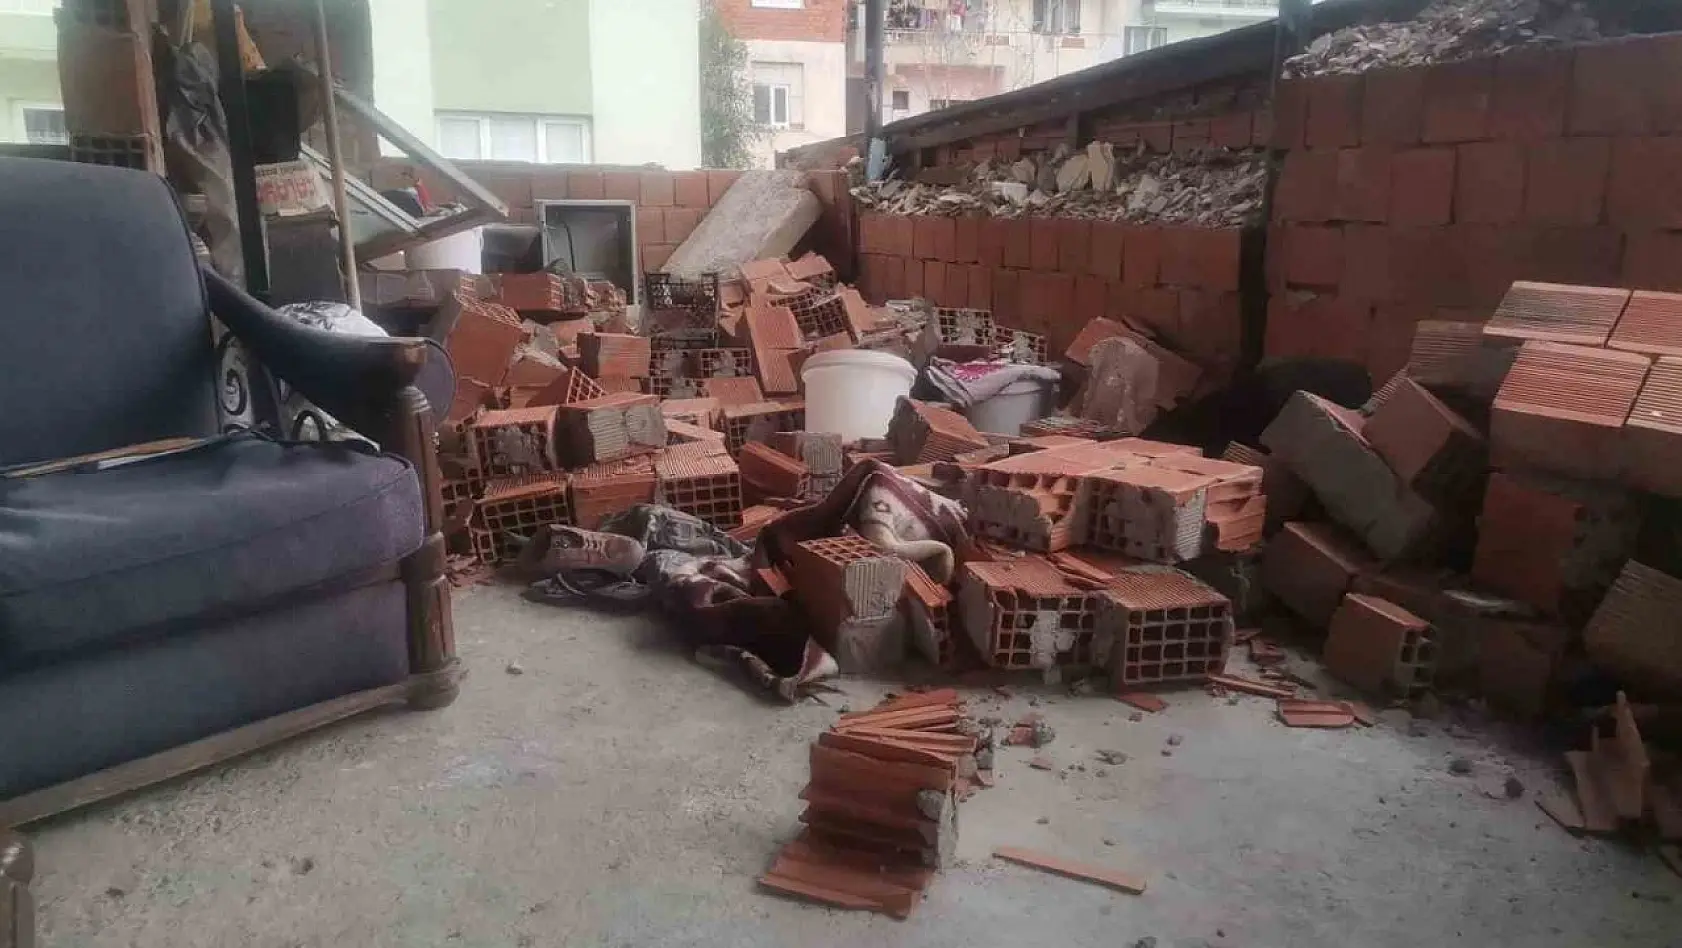 İzmir'de ekmek yapan kadınların üzerine teras duvarı yıkıldı: 3 yaralı